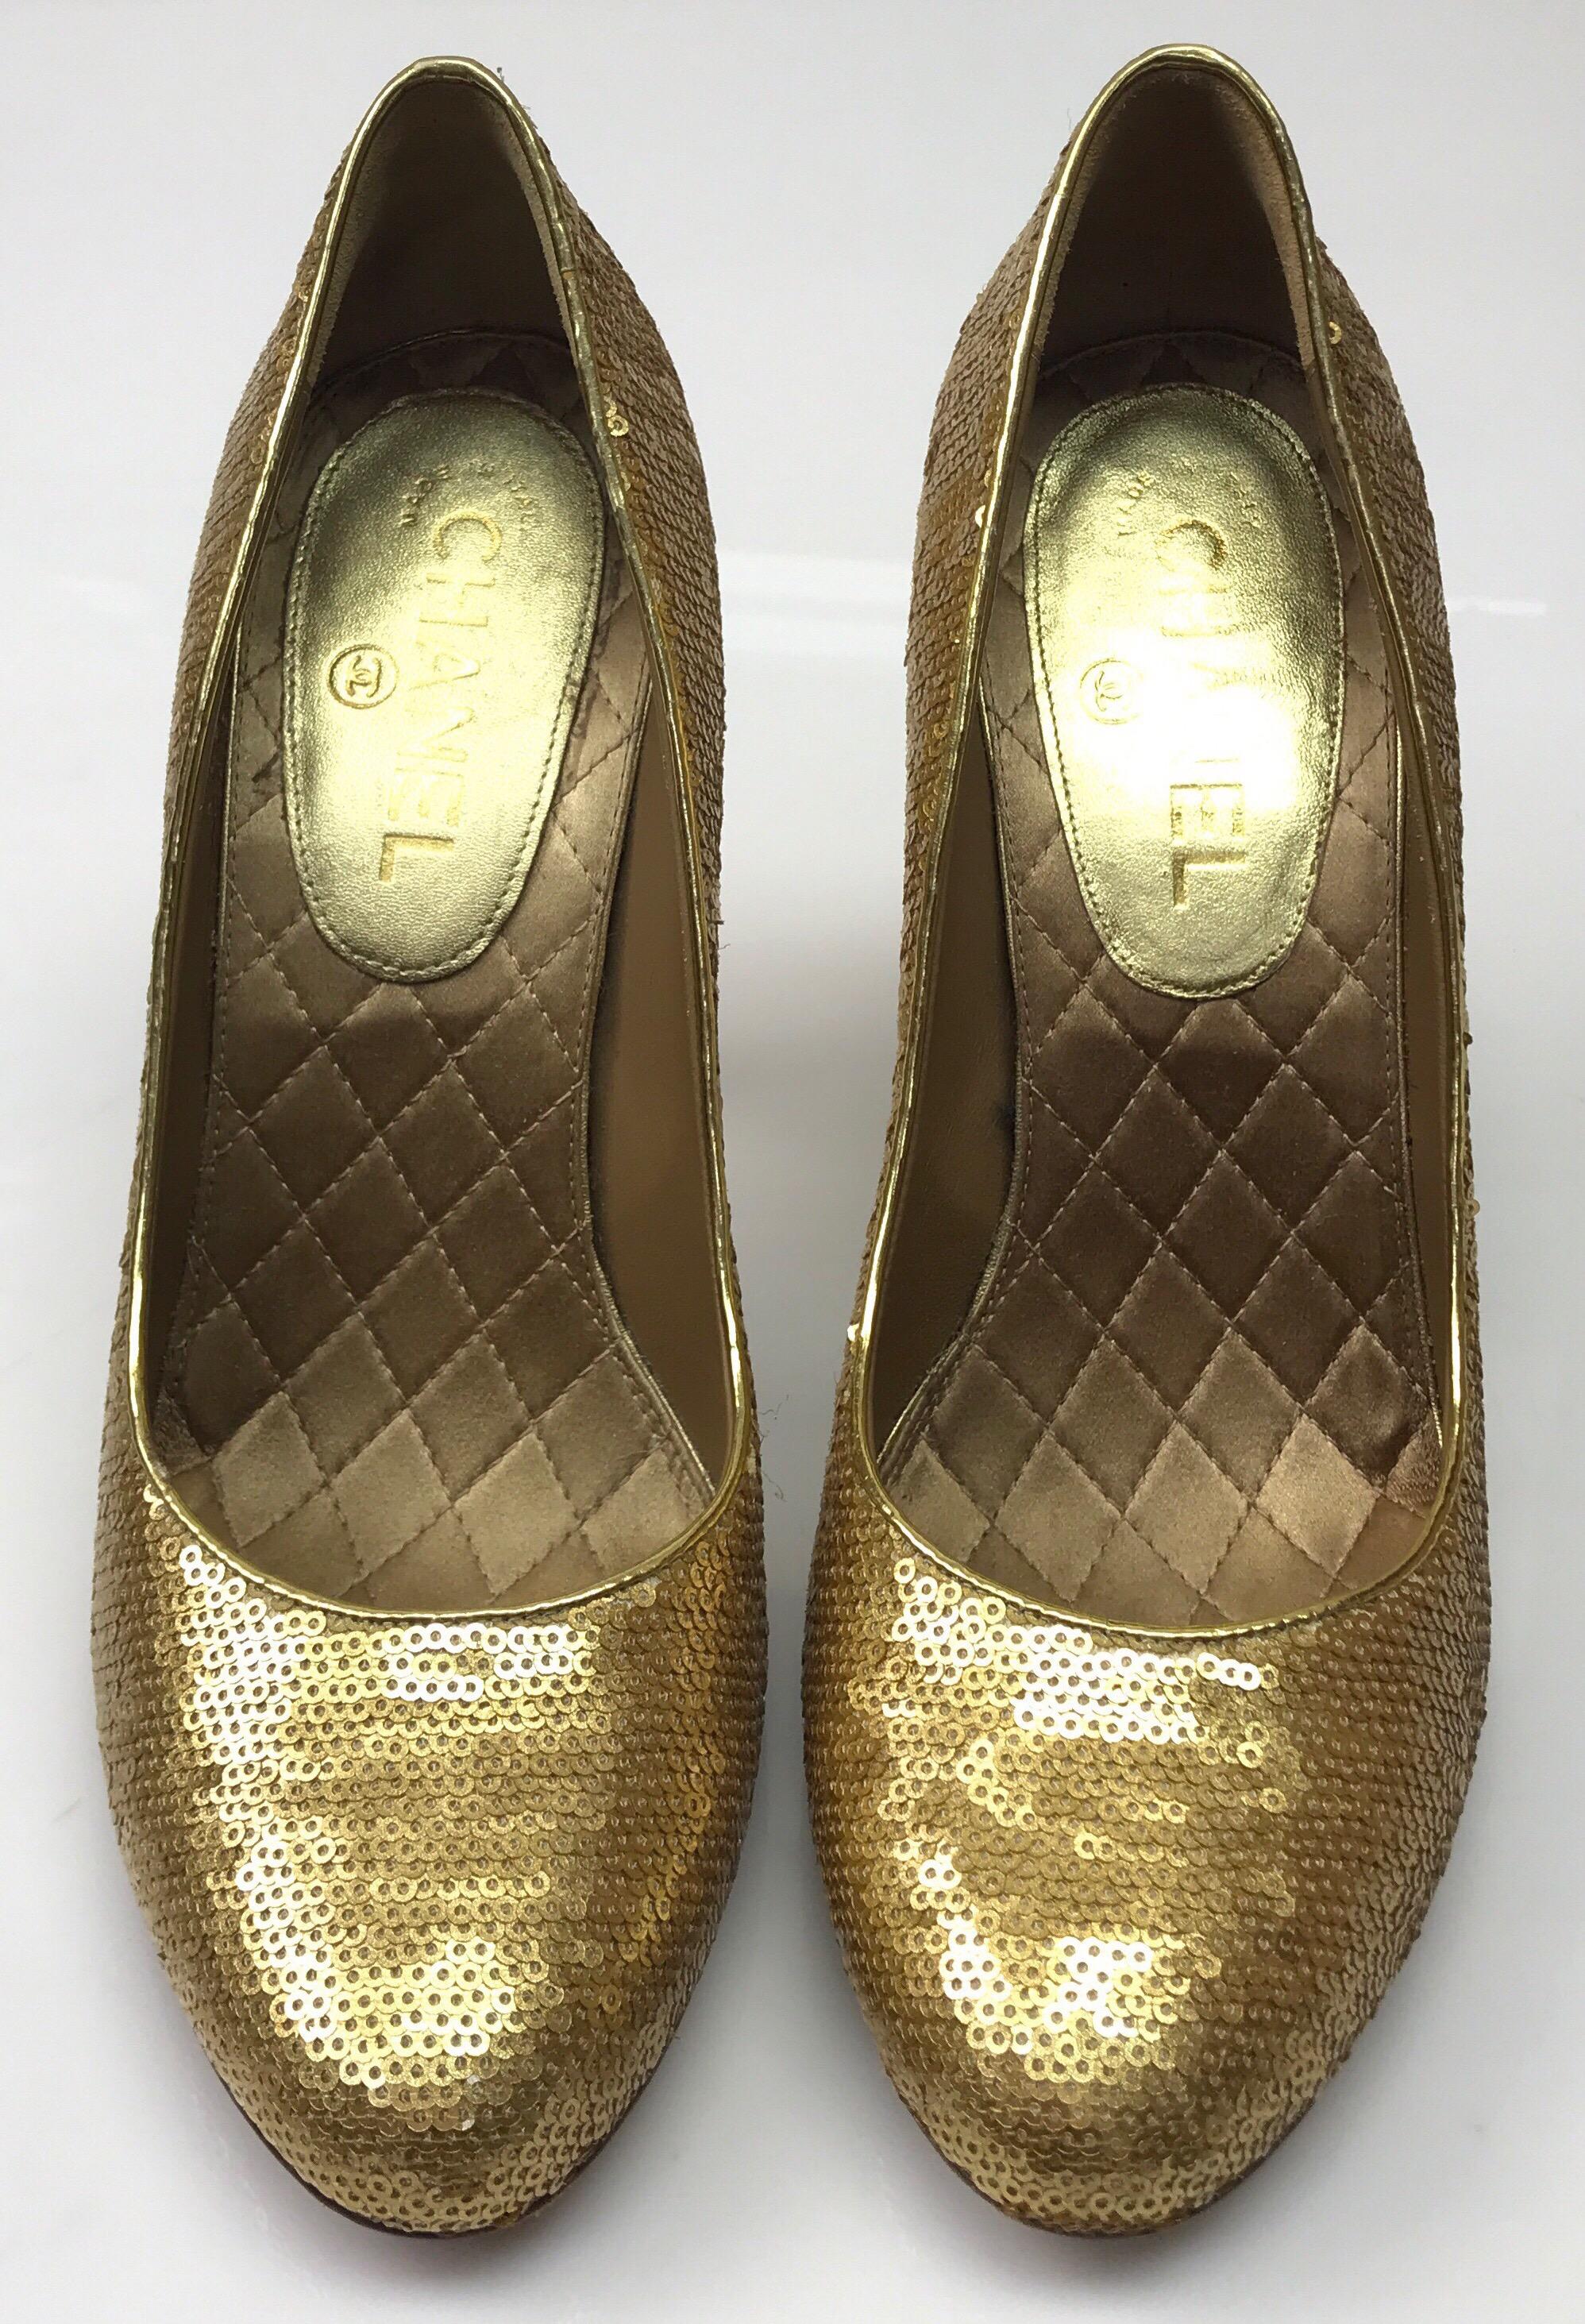 CHANEL Chaussures à talons piquées en soie dorée Podesua - 40. Ces adorables escarpins Chanel sont en bon état. Il manque quelques paillettes à deux endroits, comme indiqué sur la photo. Les chaussures sont entièrement faites de paillettes dorées et